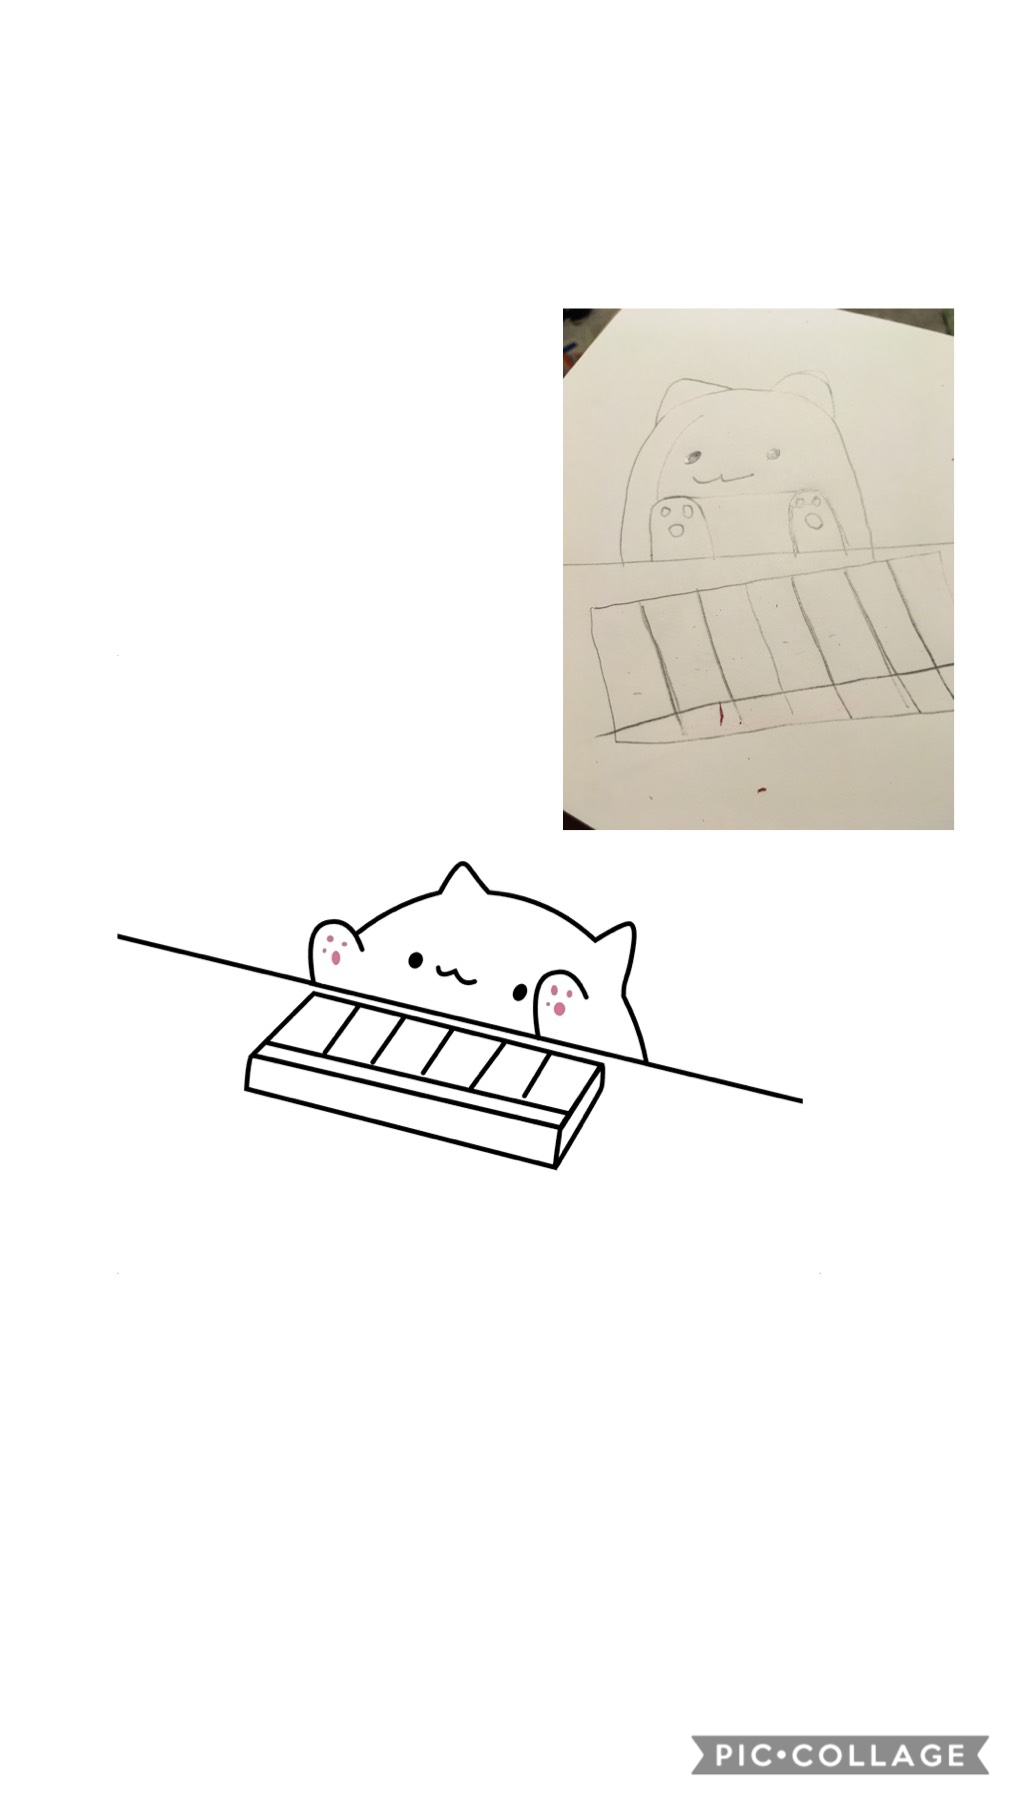 I tried to draw bingo cat